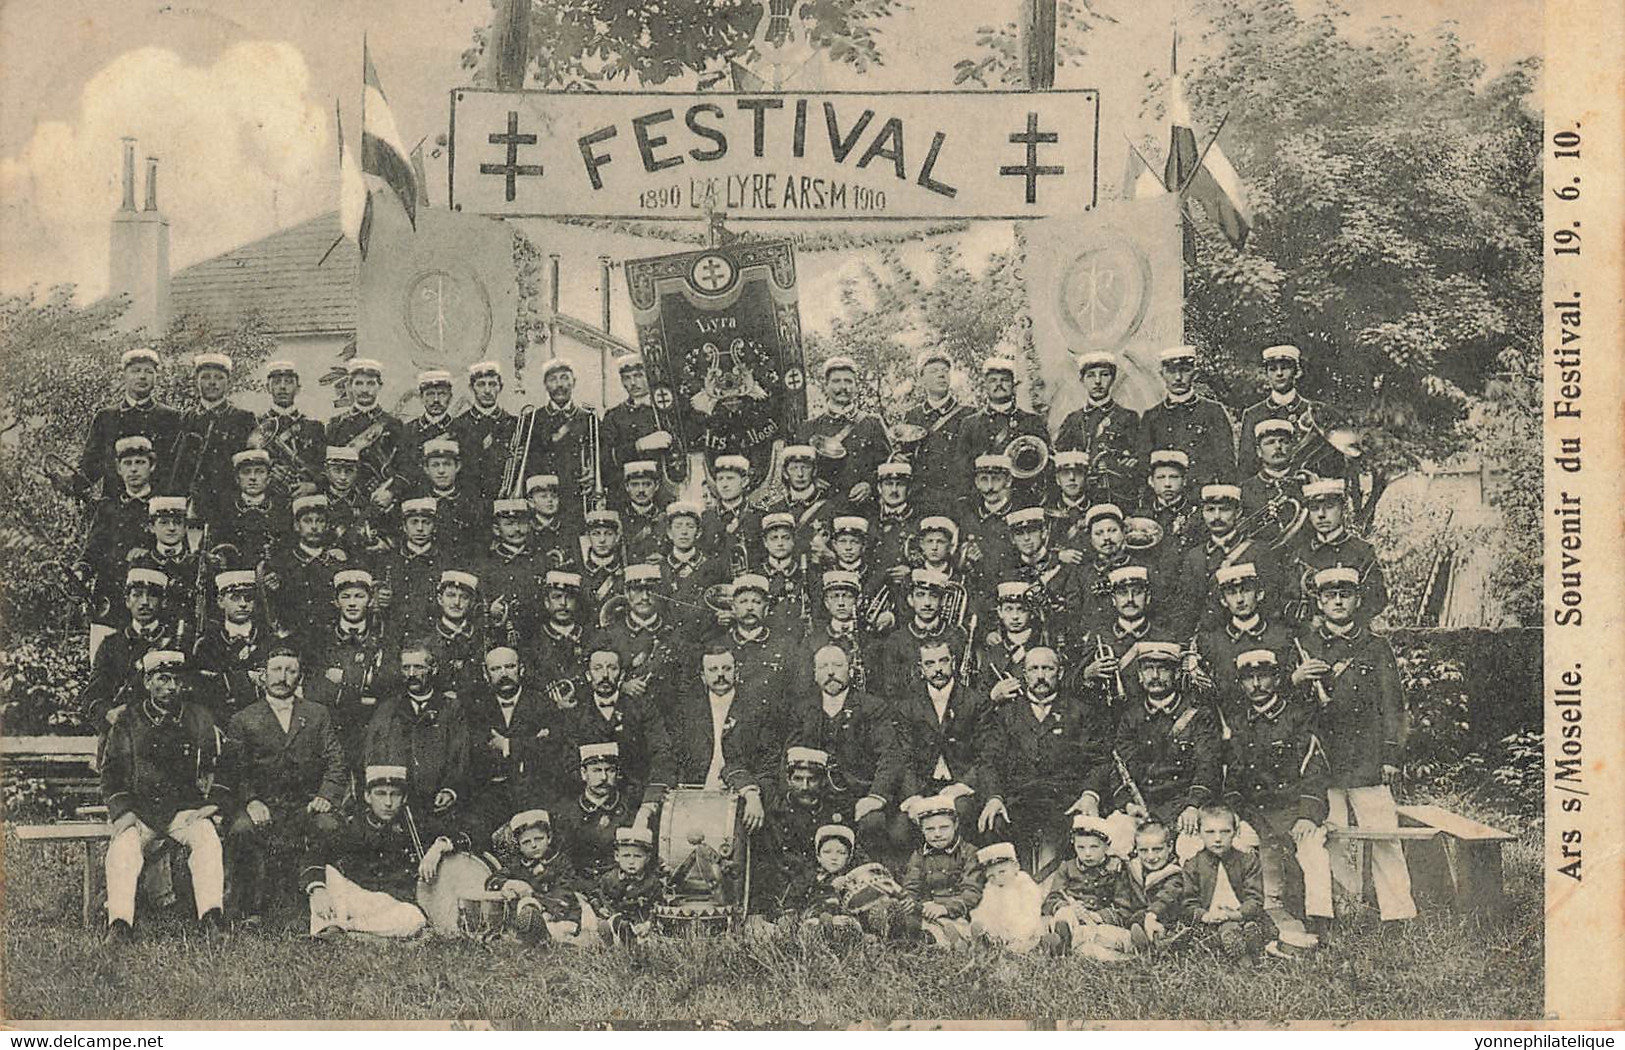 57 - MOSELLE - ARS-SUR-MOSELLE - Festival 19 Juin 1910 La Lyre ARS-M - Défaut Pliure Voir Scans Recto Et Verso (10038) - Ars Sur Moselle